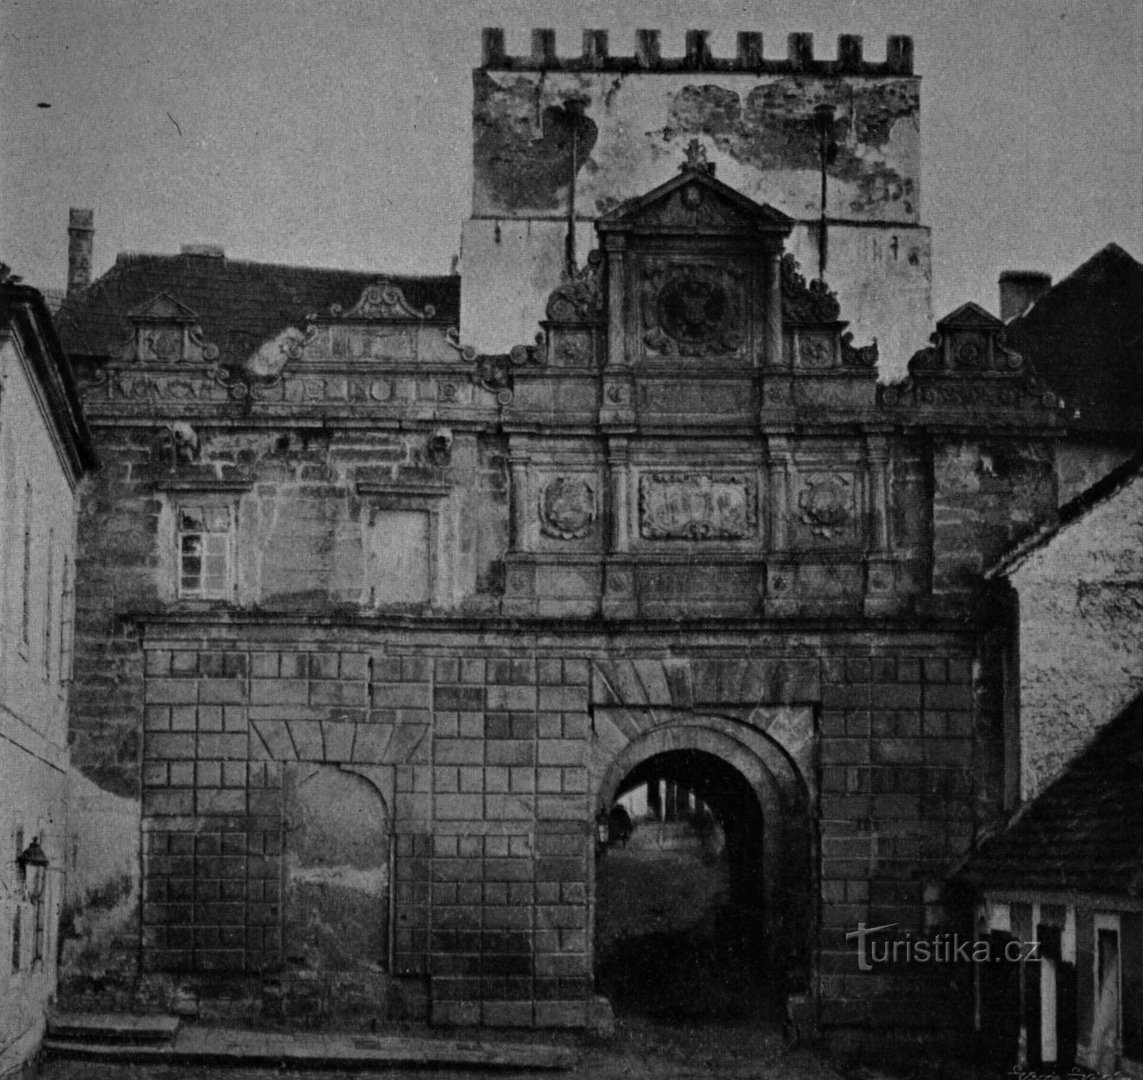 Cổng Praha Královéhradecká ngay trước khi bị phá hủy